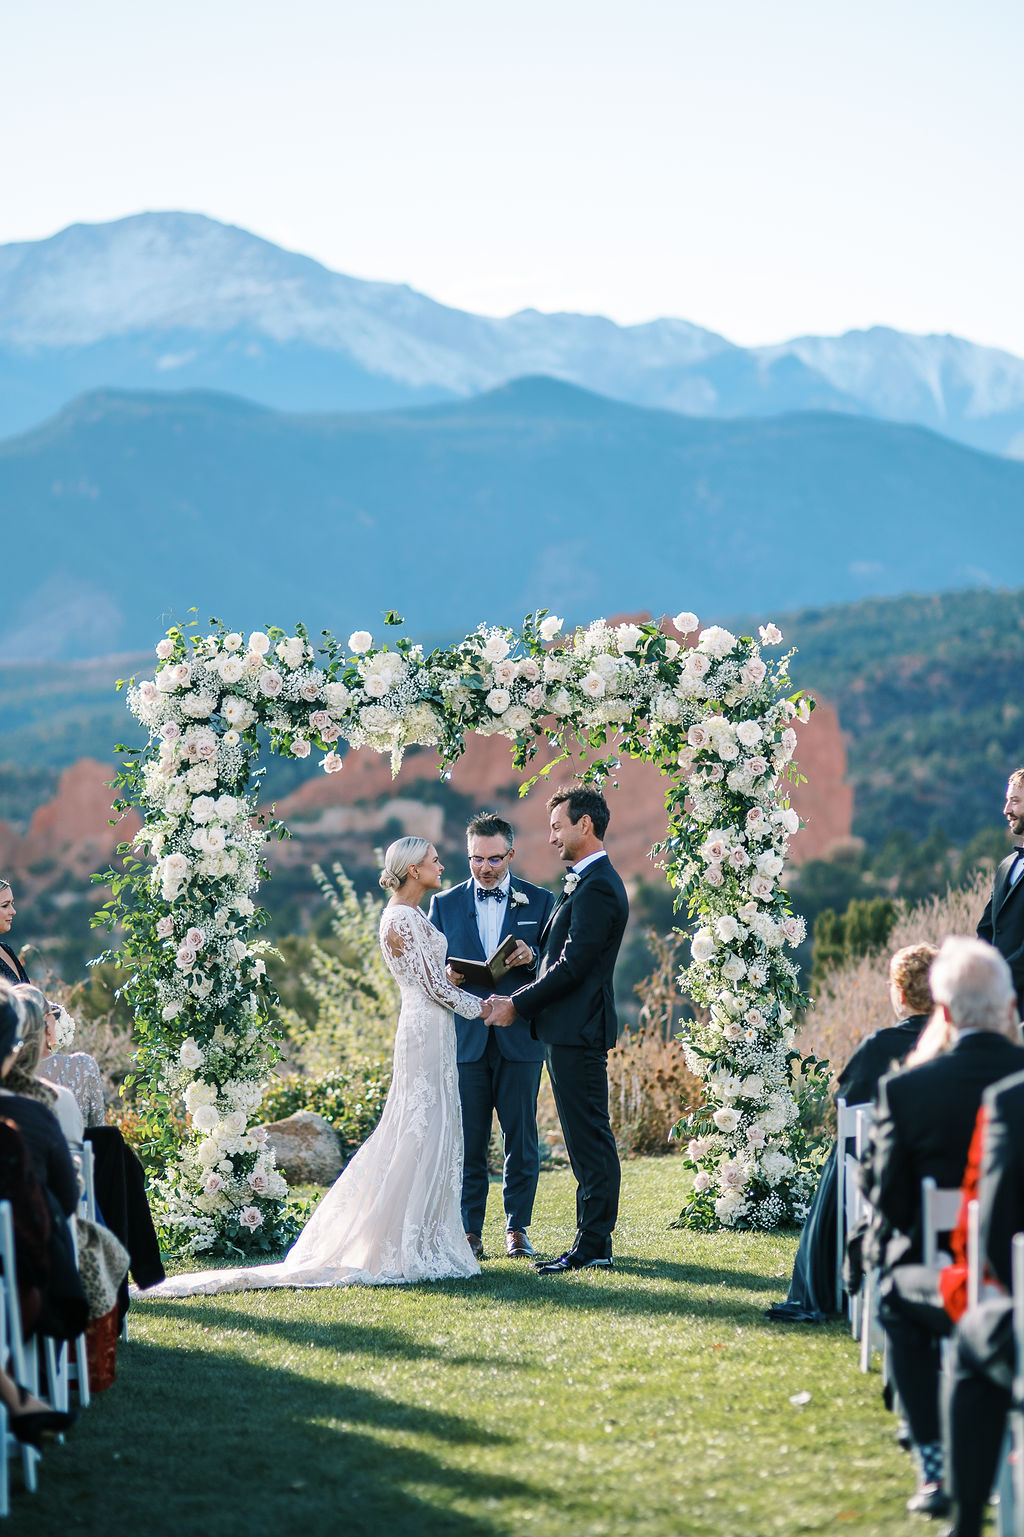 Best Colorado Wedding Venues, Top Colorado Wedding Venues, Jordan Gresham Photography, Garden of the Gods